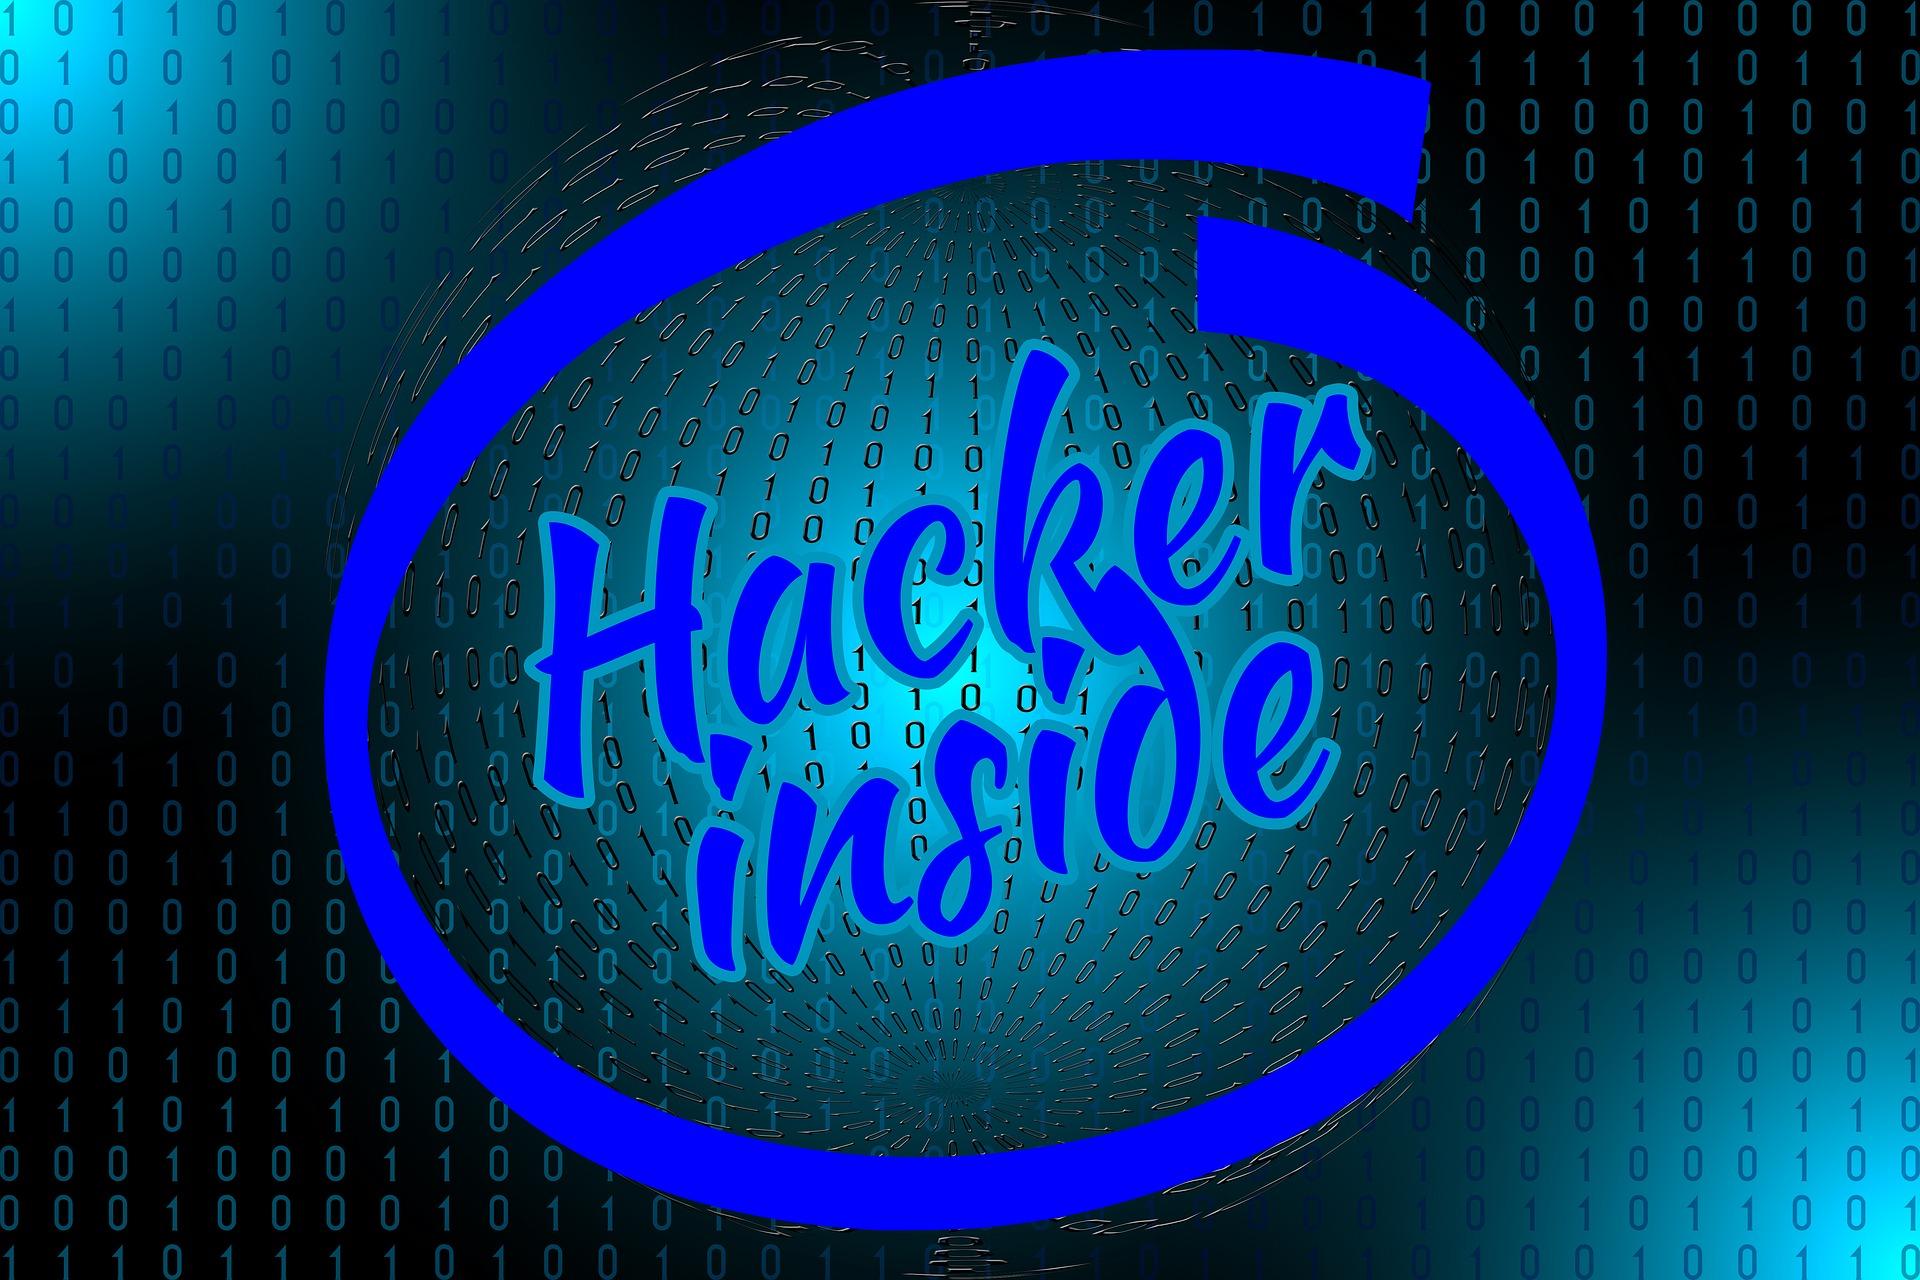 WeLeakData hacker inside